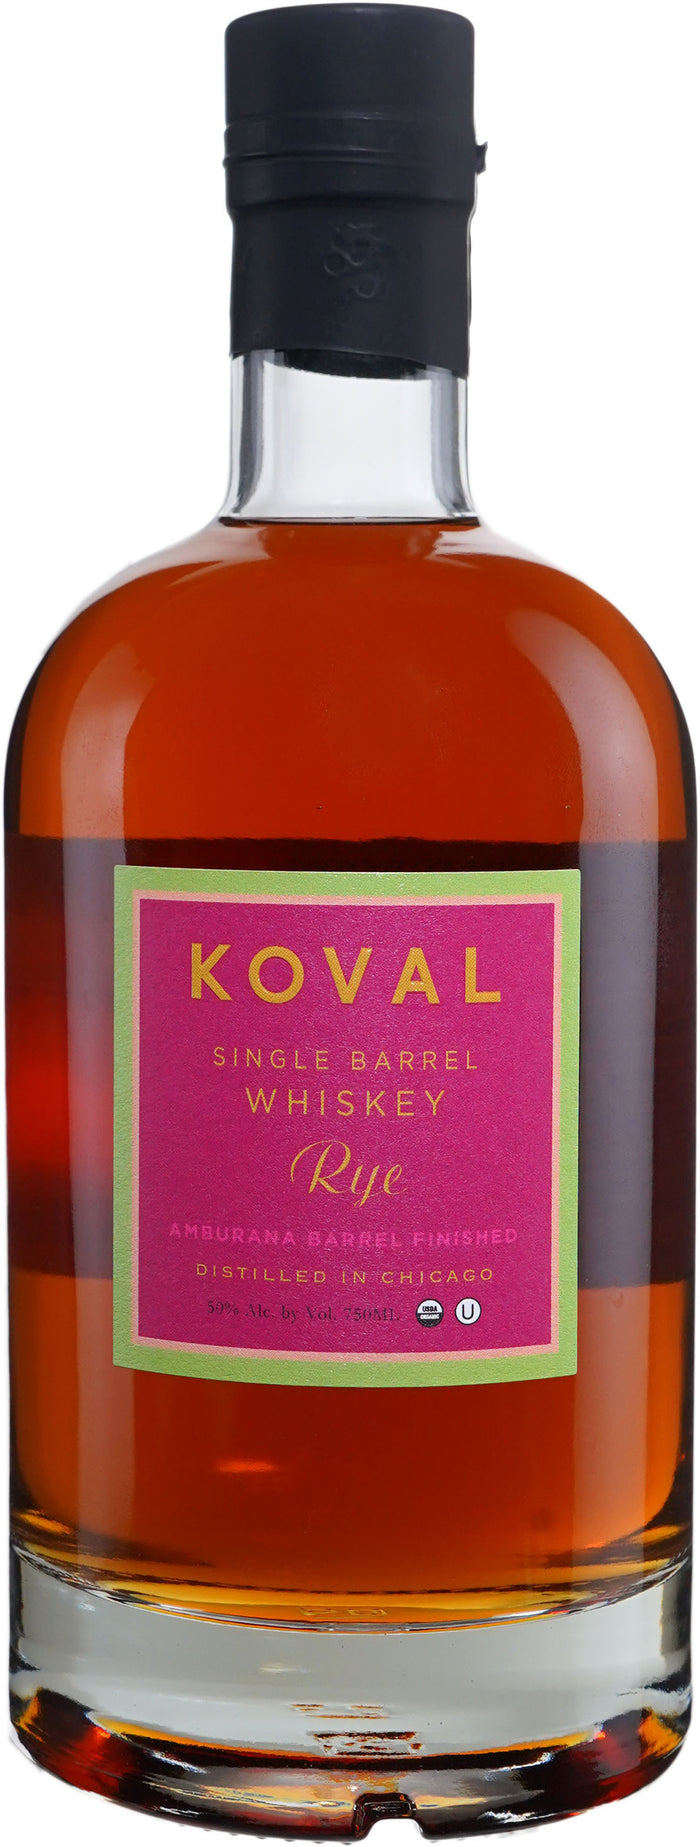 Koval Finished in Amburana Cask Rye Whiskey